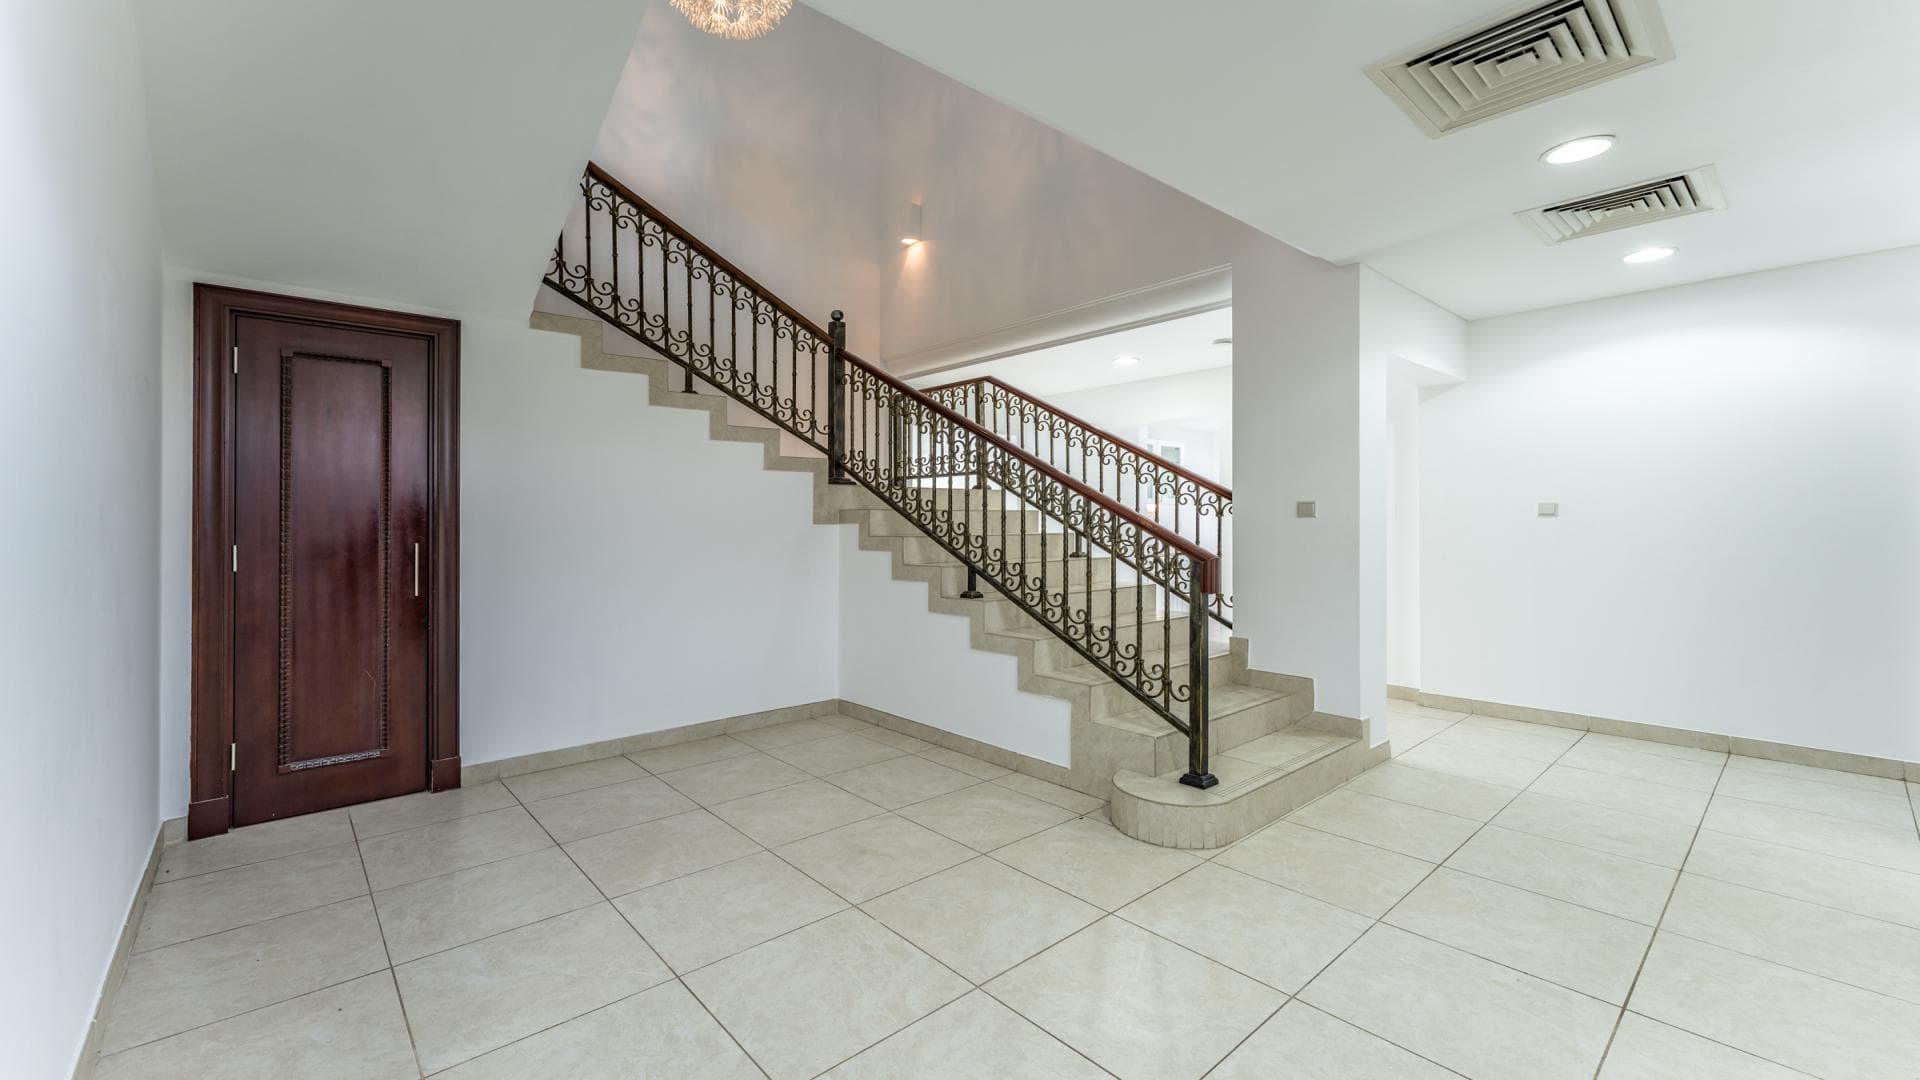 5 Bedroom Villa For Rent Al Thamam 35 Lp36218 2f6822585f5e860.jpg